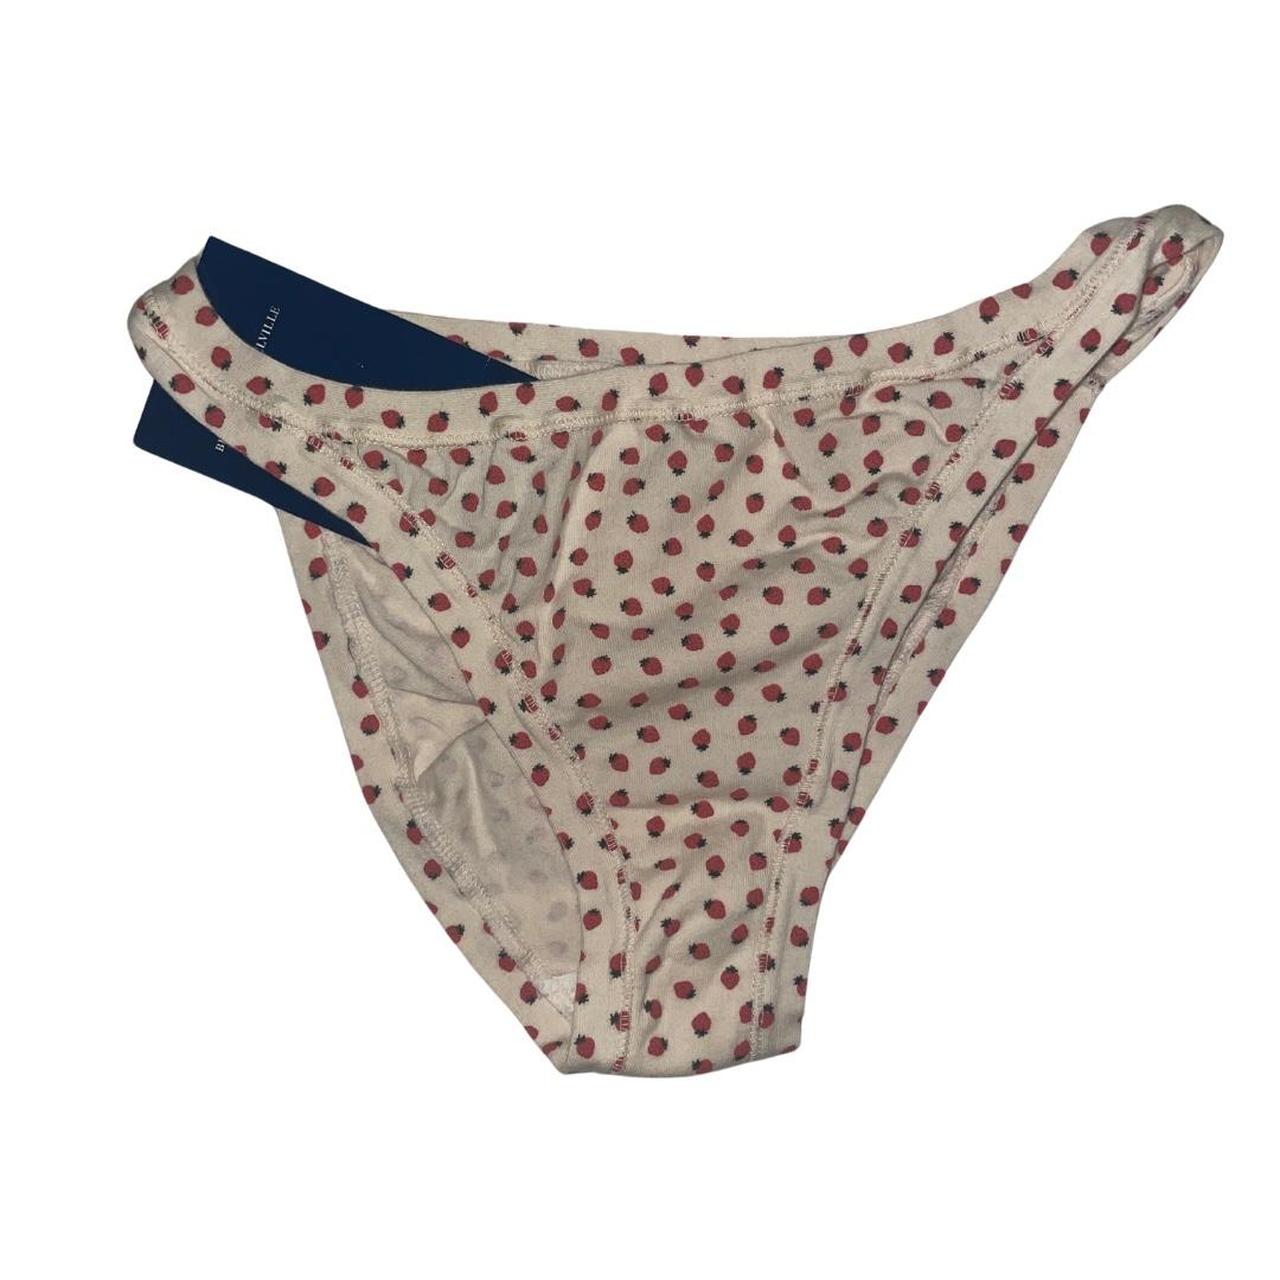 Pucker up underwear bundle, both size medium,  - Depop